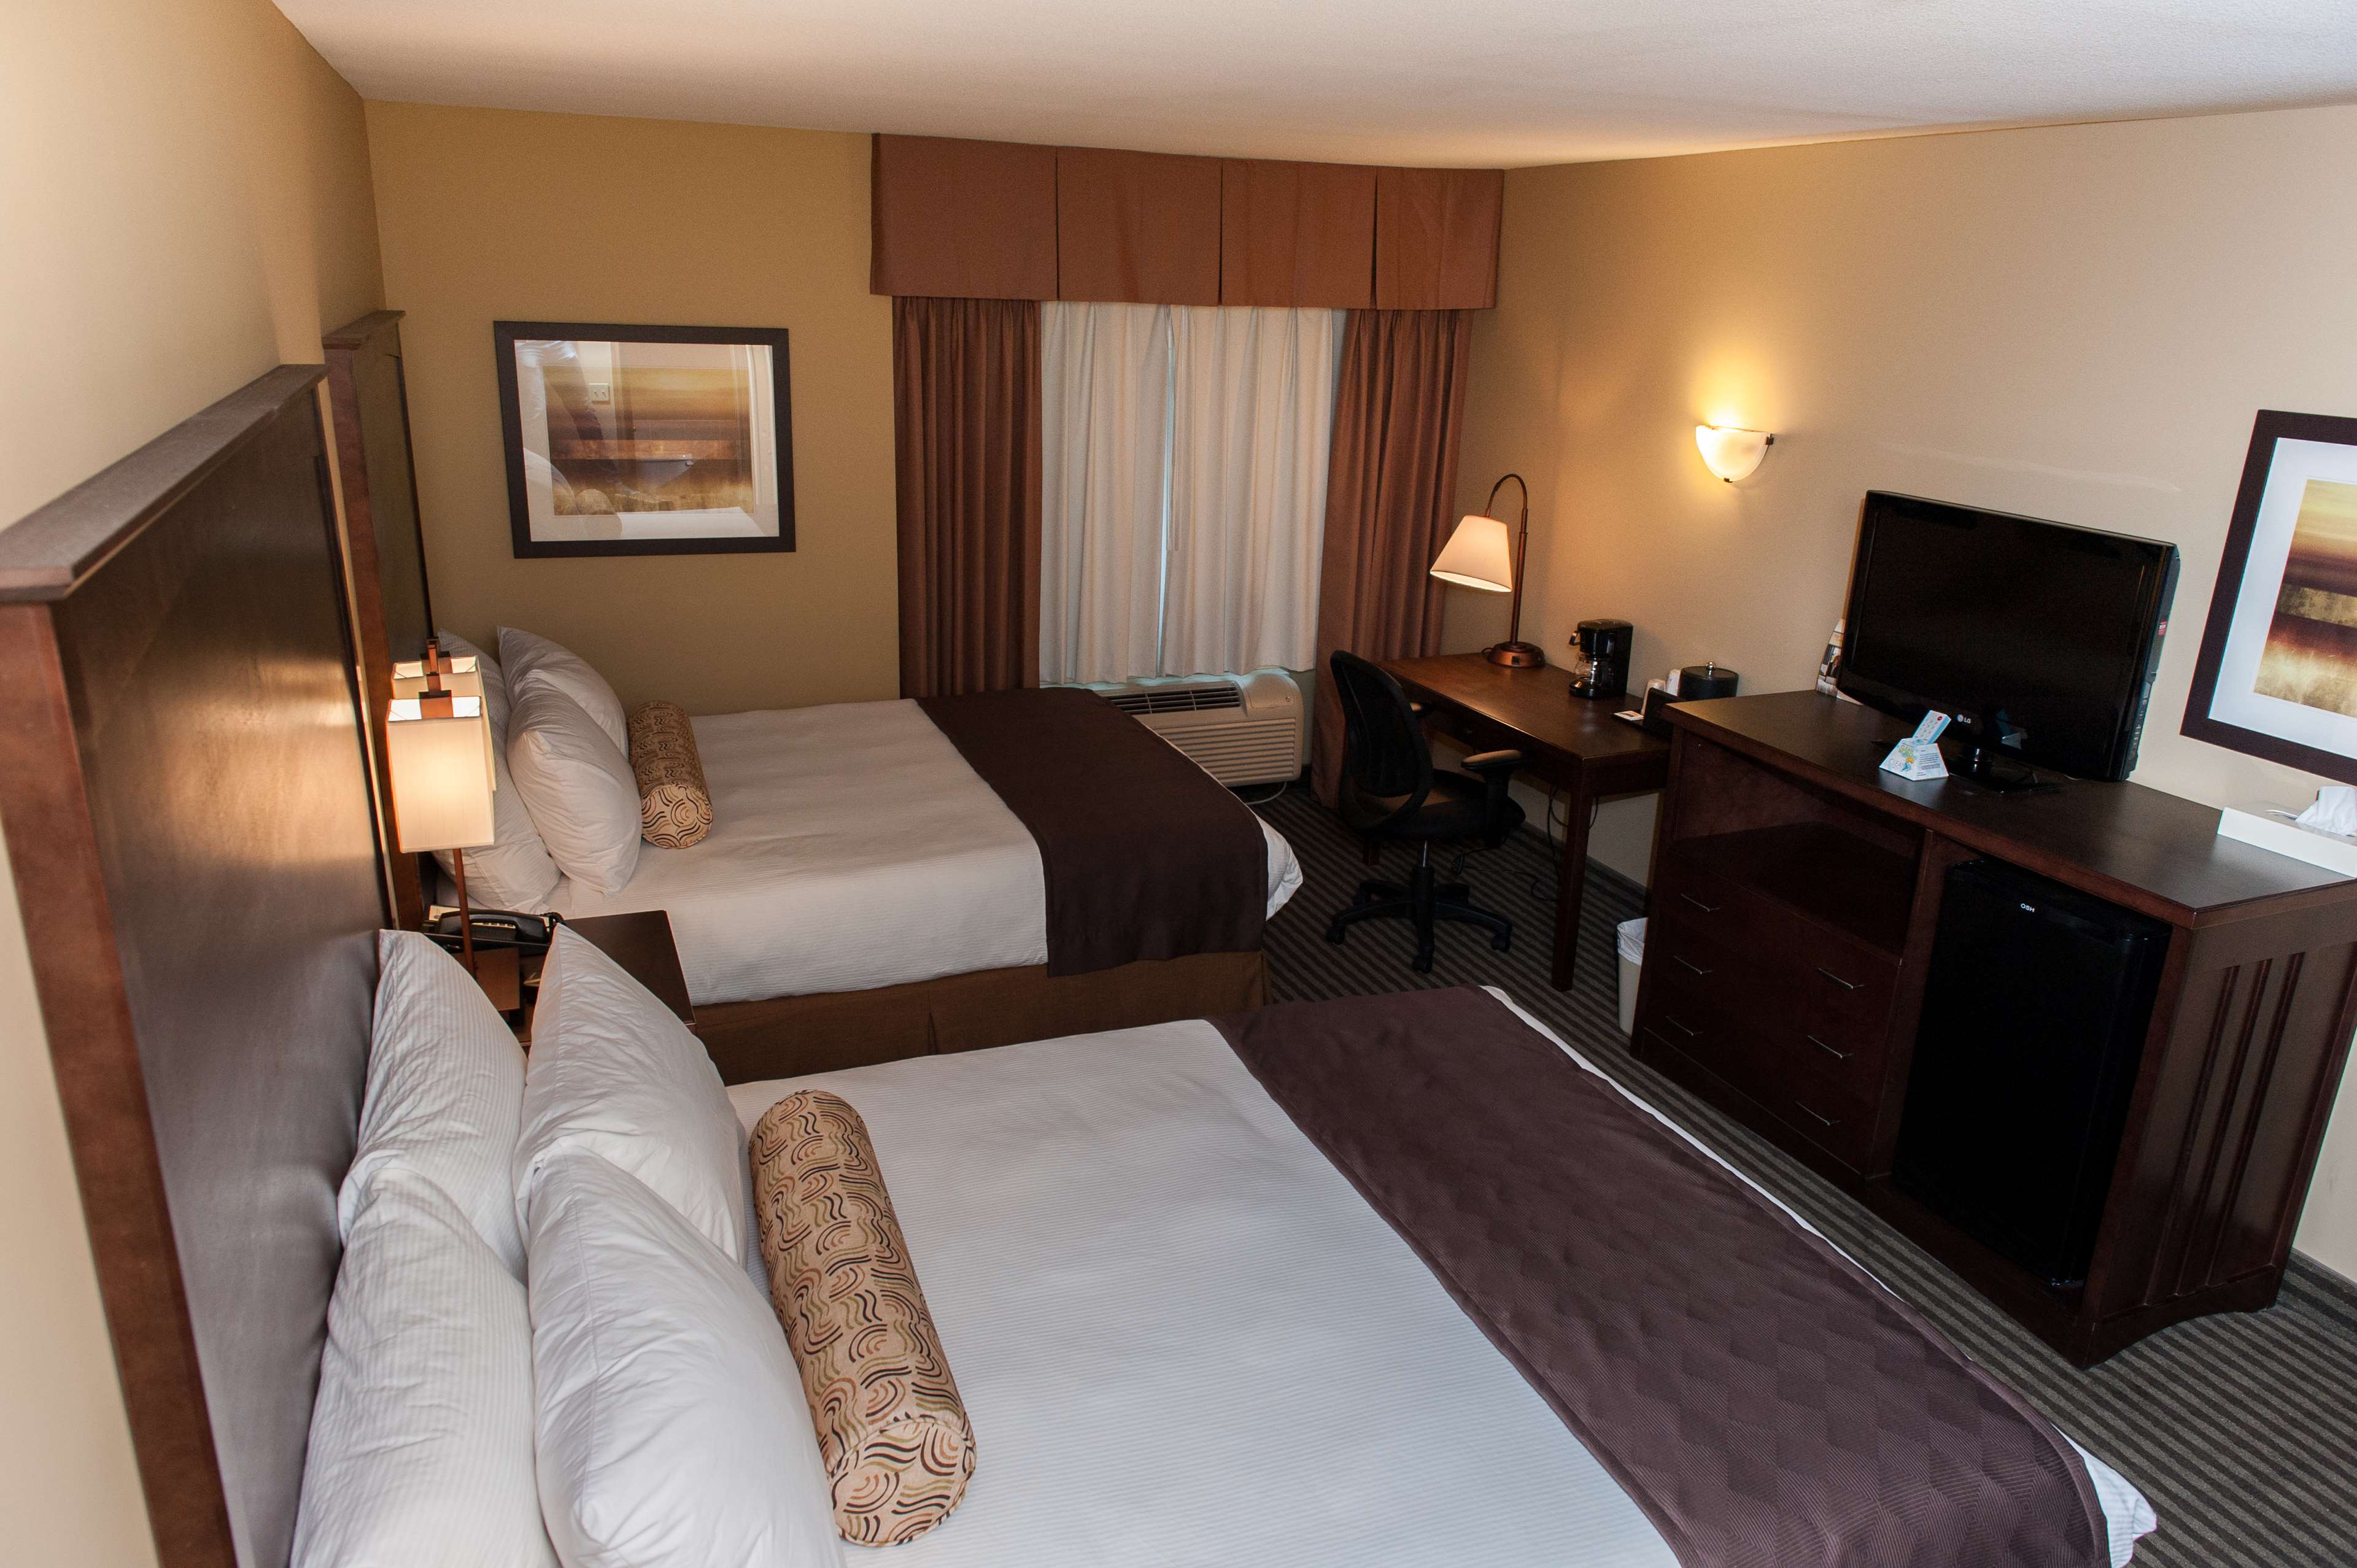 Double Bedded Guest Room Best Western Maple Ridge Hotel Maple Ridge (604)467-1511